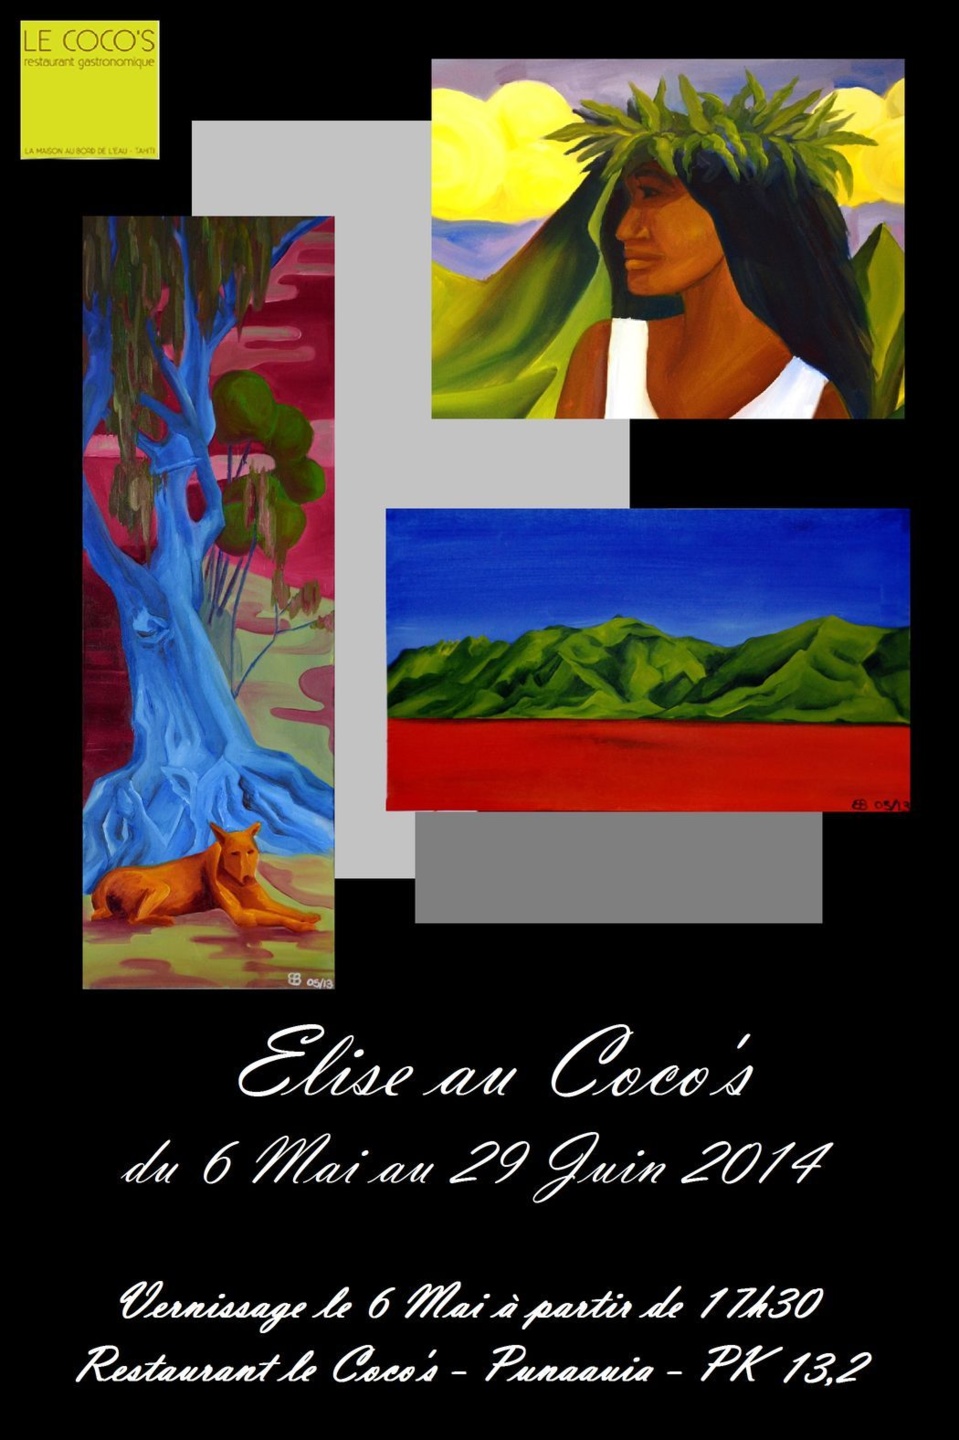 Exposition d'Elise Bertret au Coco's du 6 mai au 29 juin 2014